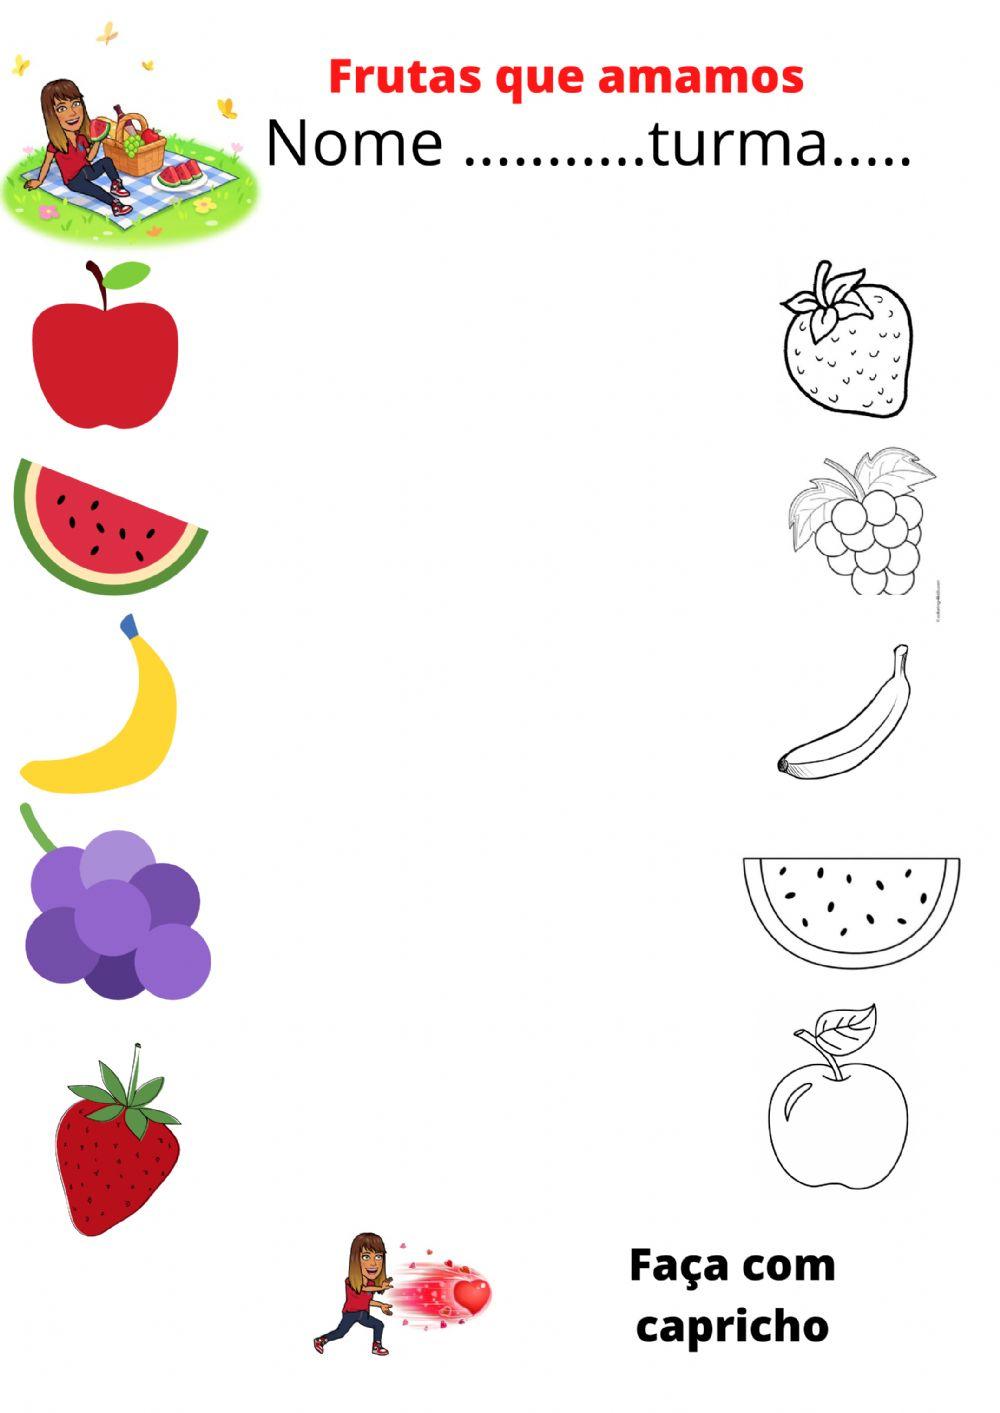 Frutas que amamos